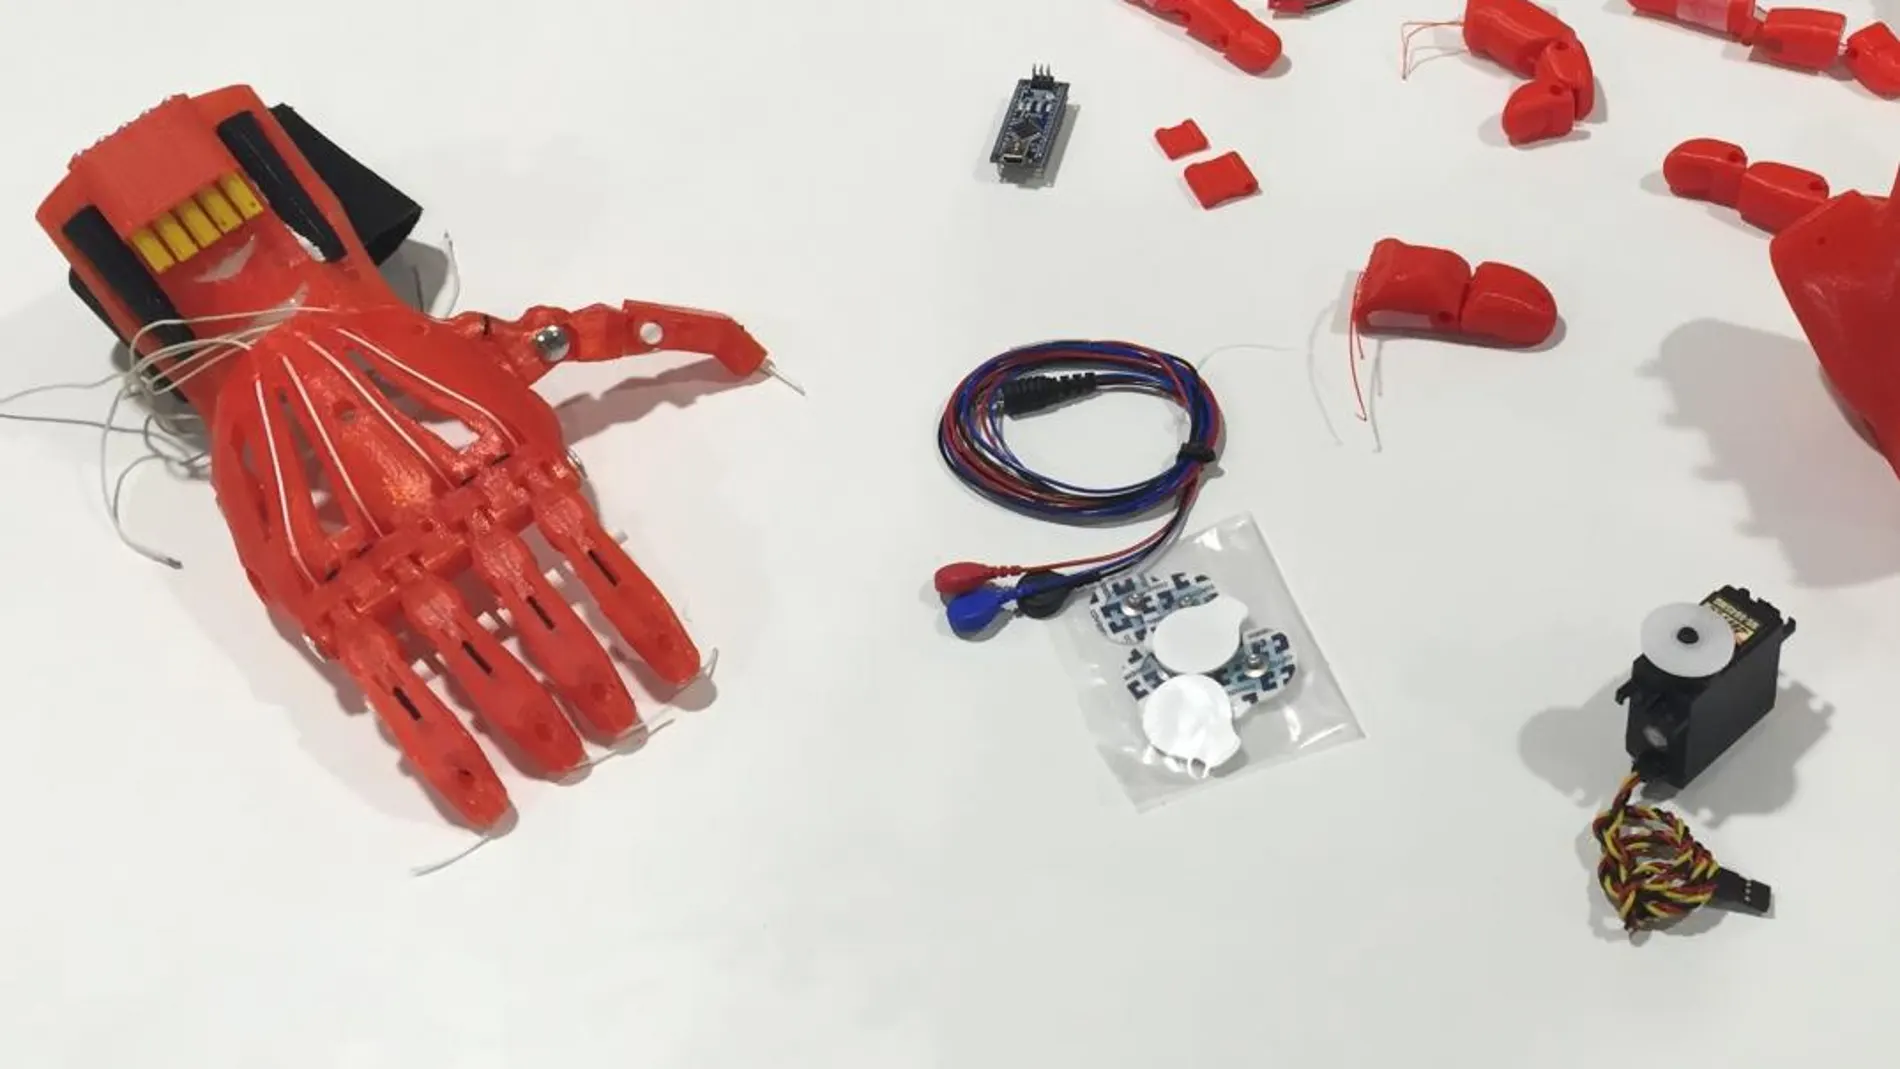 La Universidad CEU San Pablo realiza prótesis de mano y brazo con impresión 3D